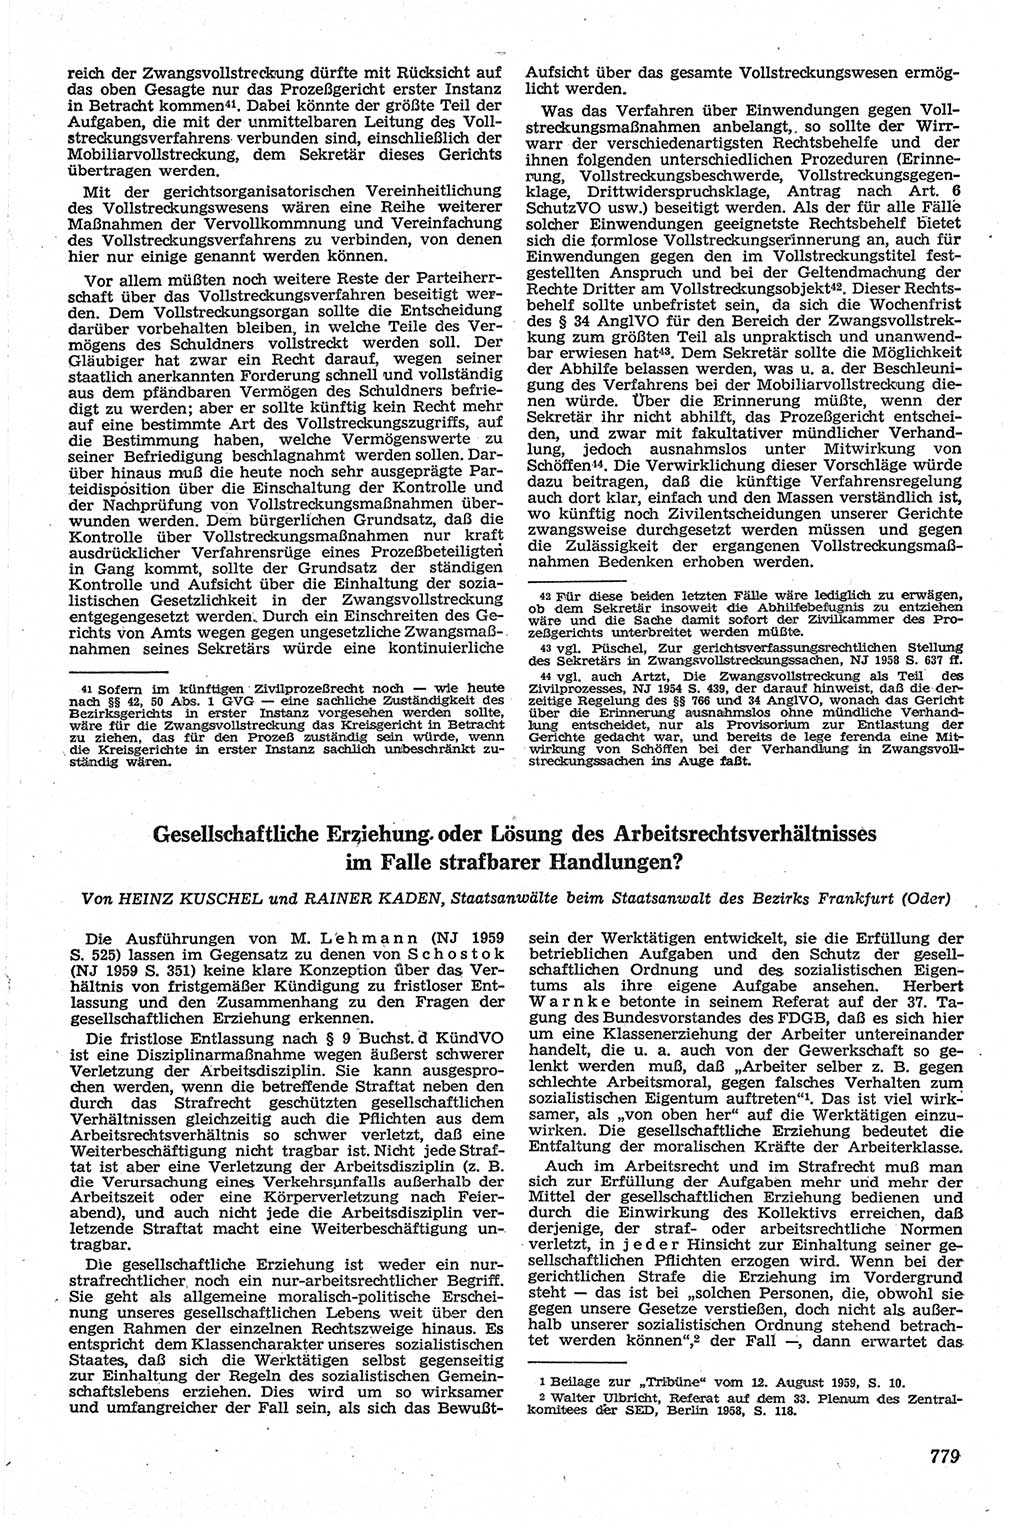 Neue Justiz (NJ), Zeitschrift für Recht und Rechtswissenschaft [Deutsche Demokratische Republik (DDR)], 13. Jahrgang 1959, Seite 779 (NJ DDR 1959, S. 779)